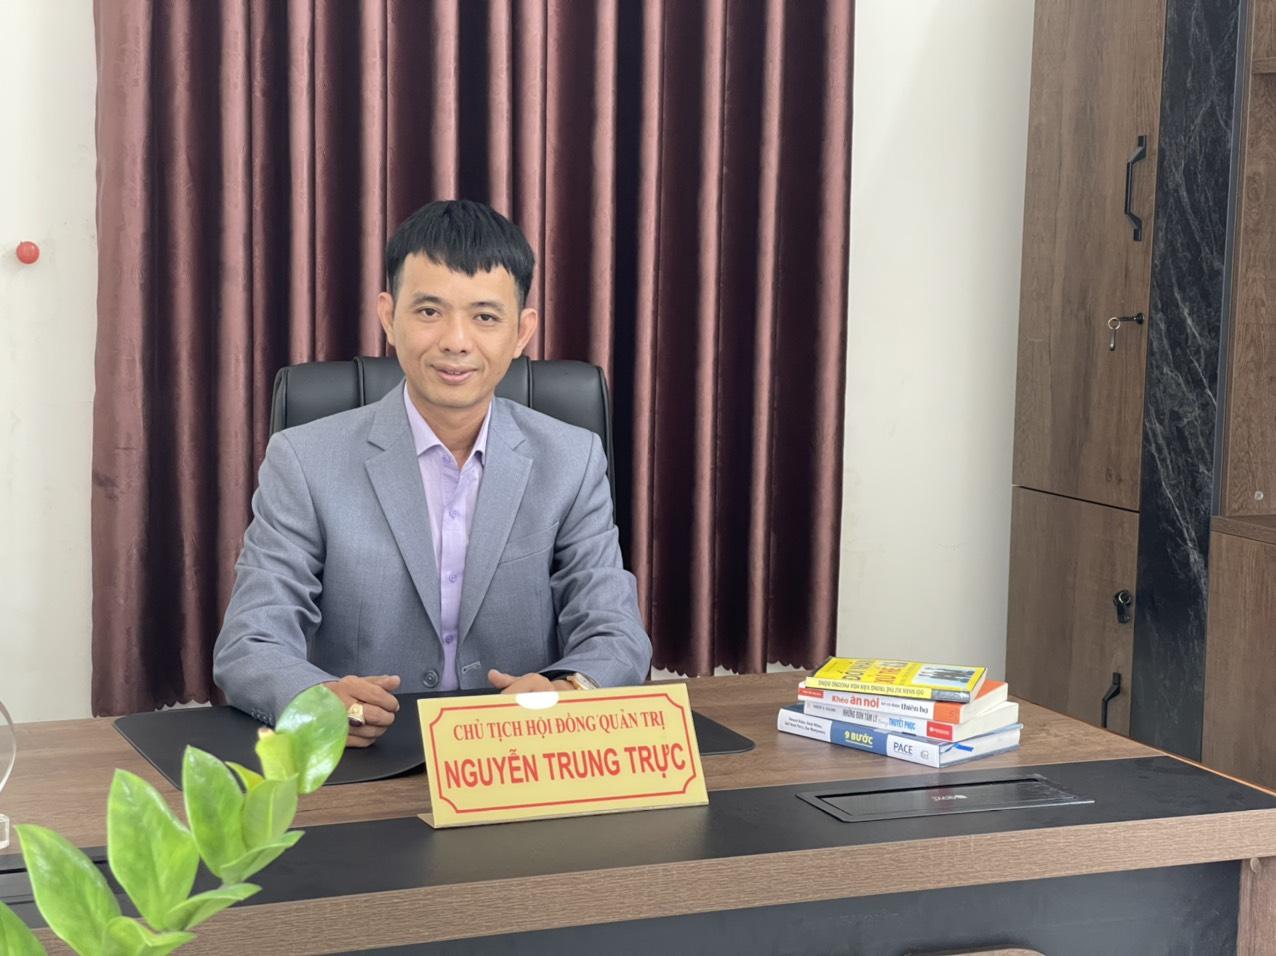 Giám đốc 8X Nguyễn Trung Trực và con đường trở thành doanh nhân trẻ tiêu biểu của Việt Nam - ảnh 1